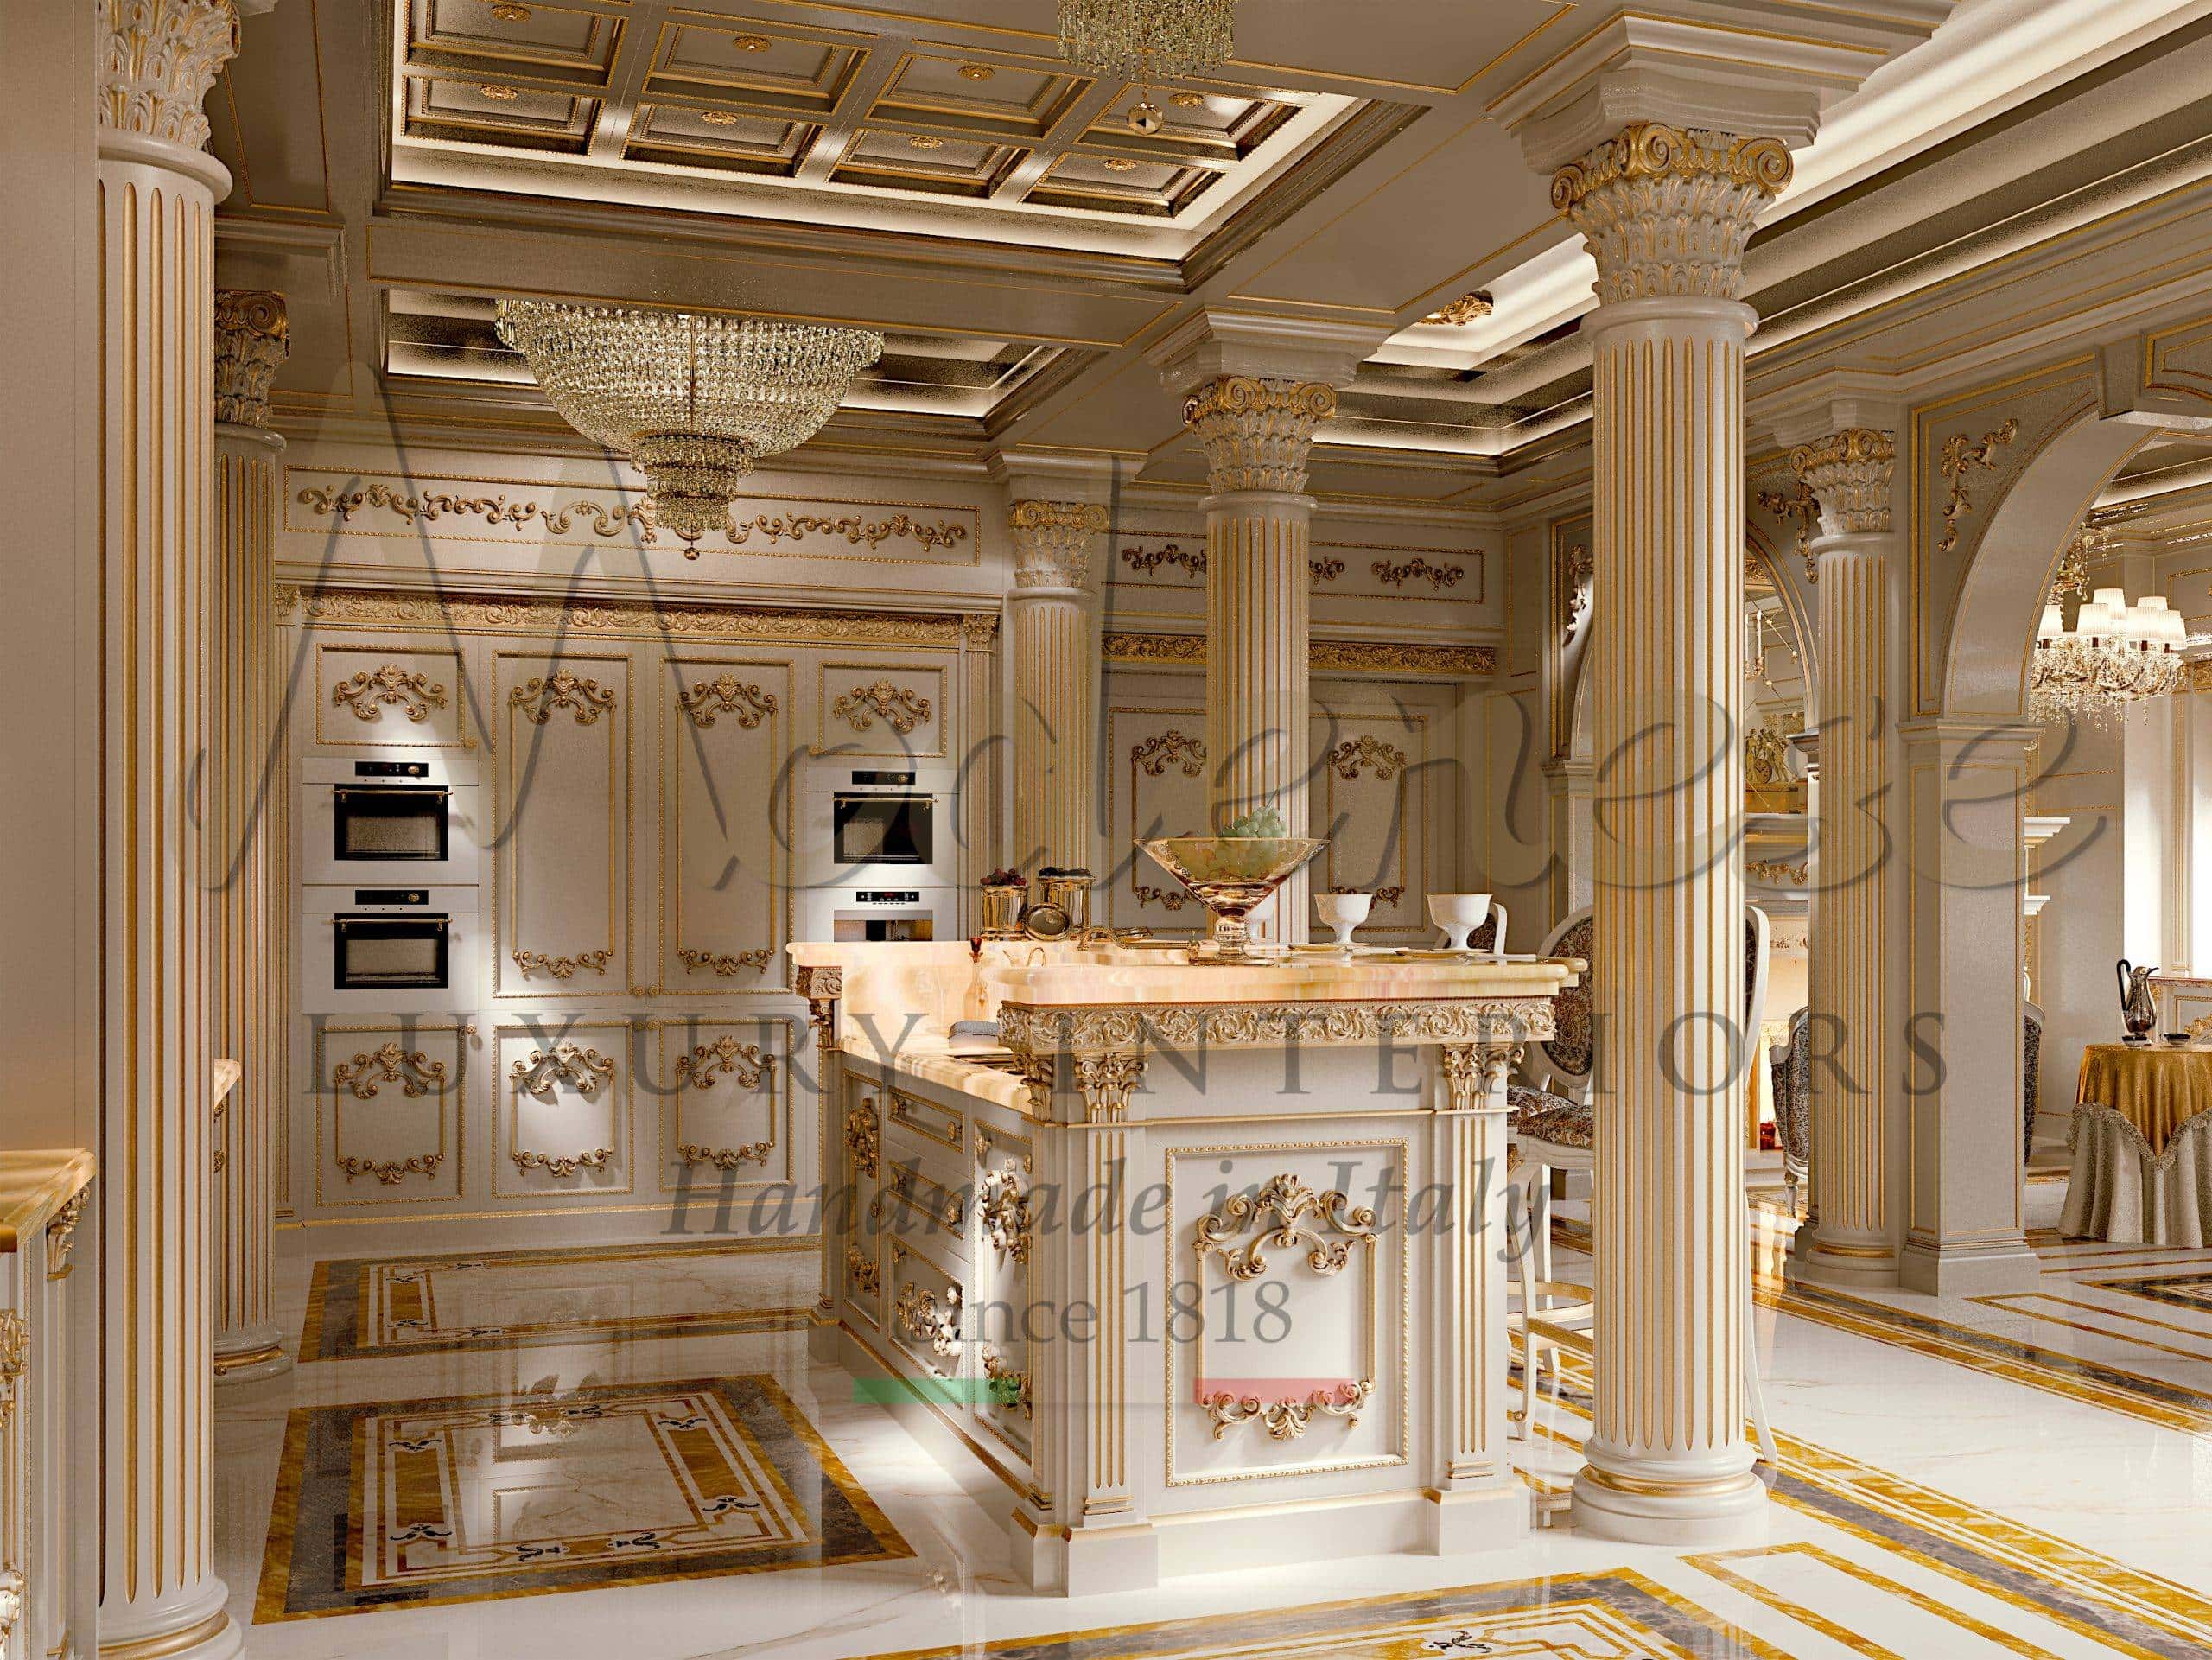 классические элитные ванные комнаты на заказ мраморные элегантные итальянские роскошные ванные дизайн проект элитной ванной комнаты дорогая качественная мебель